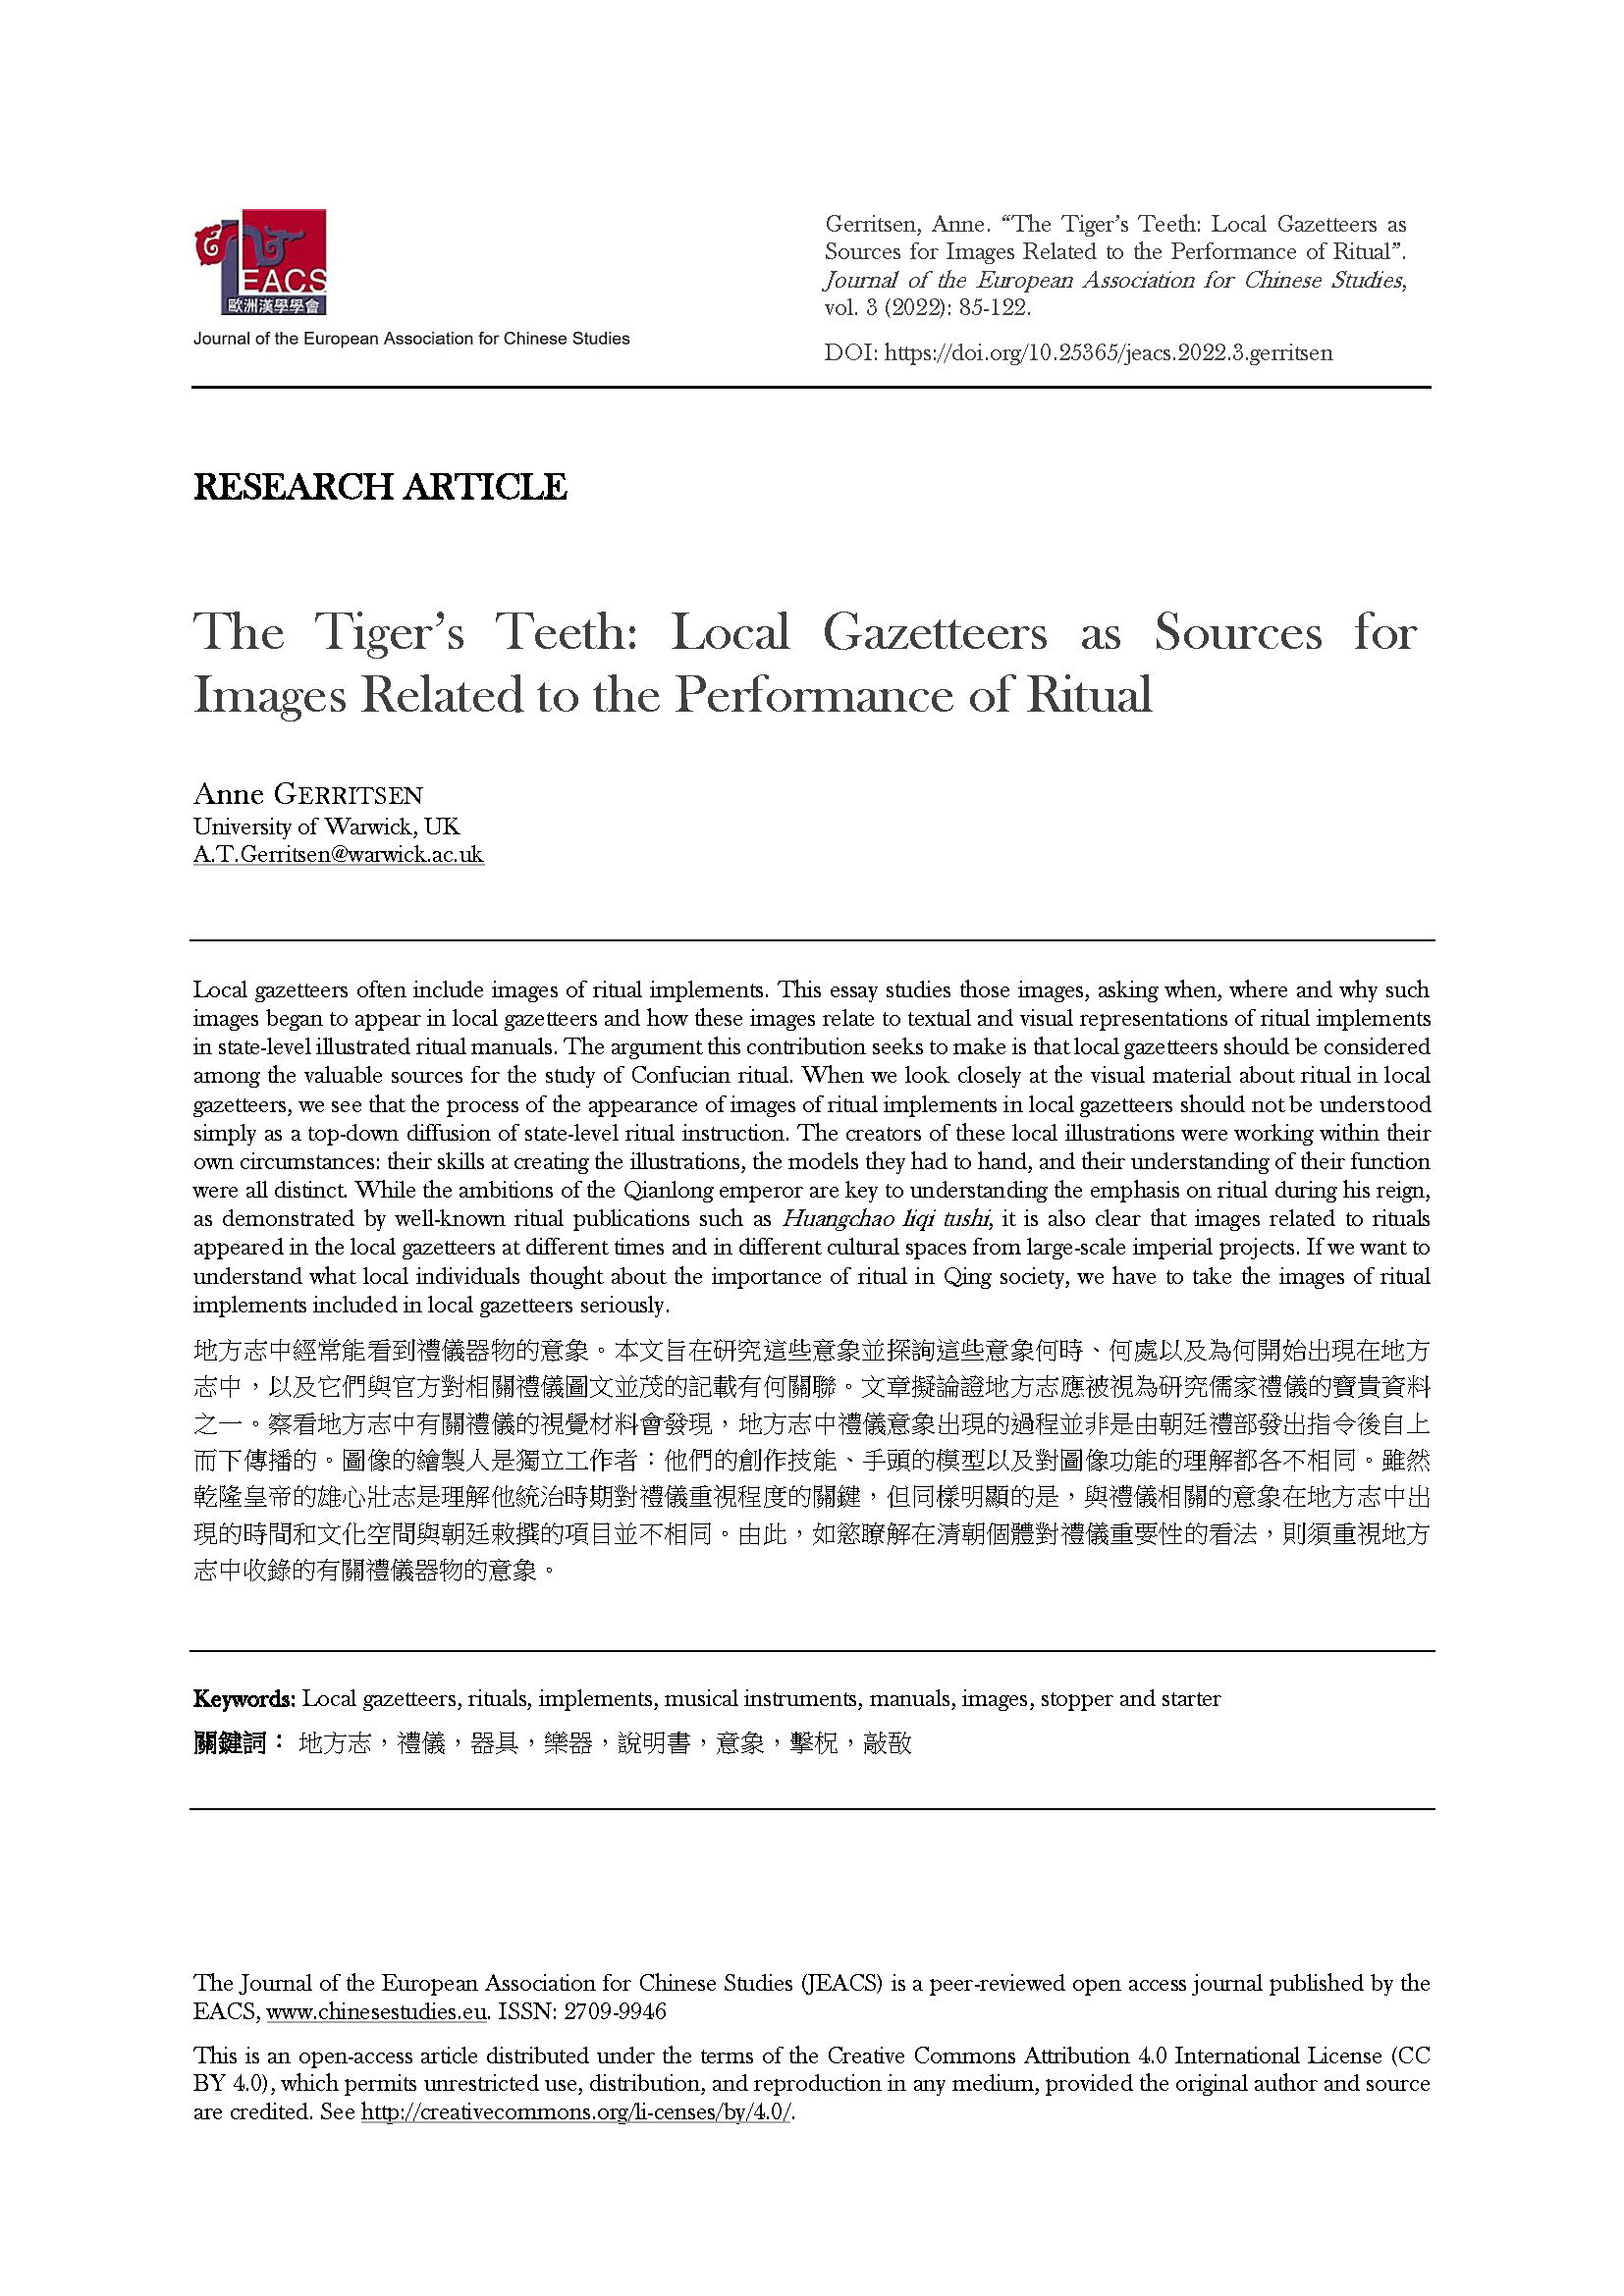 Gerritsen: The Tiger’s Teeth